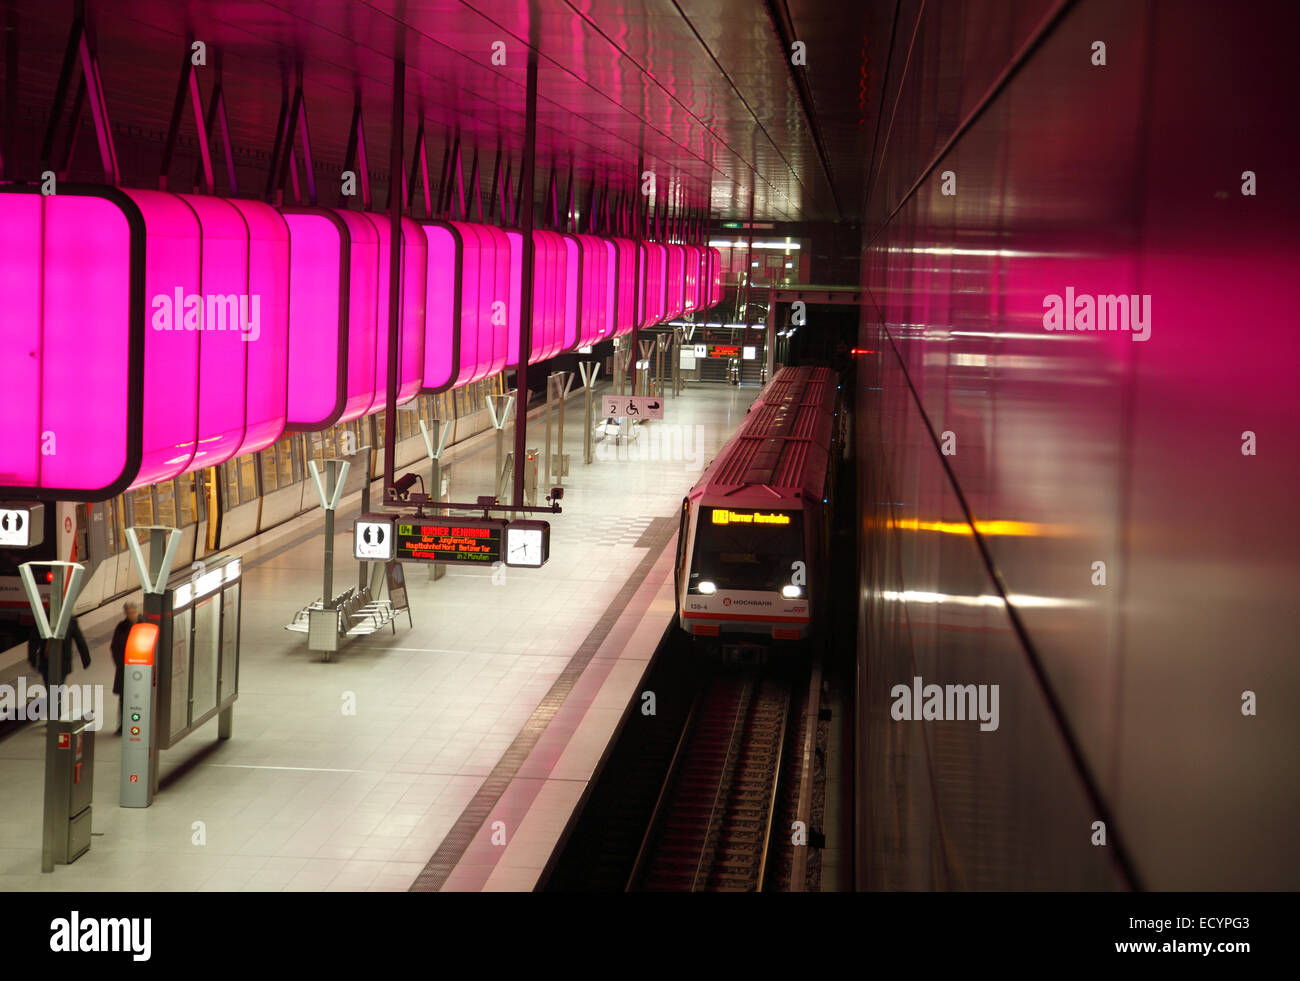 Installation de l'éclairage de couleur à Métro Station HAFENCITY UNIVERSITÄT (université), nouvelle ligne de métro U4, Hafencity, Hambourg, Allemagne Banque D'Images